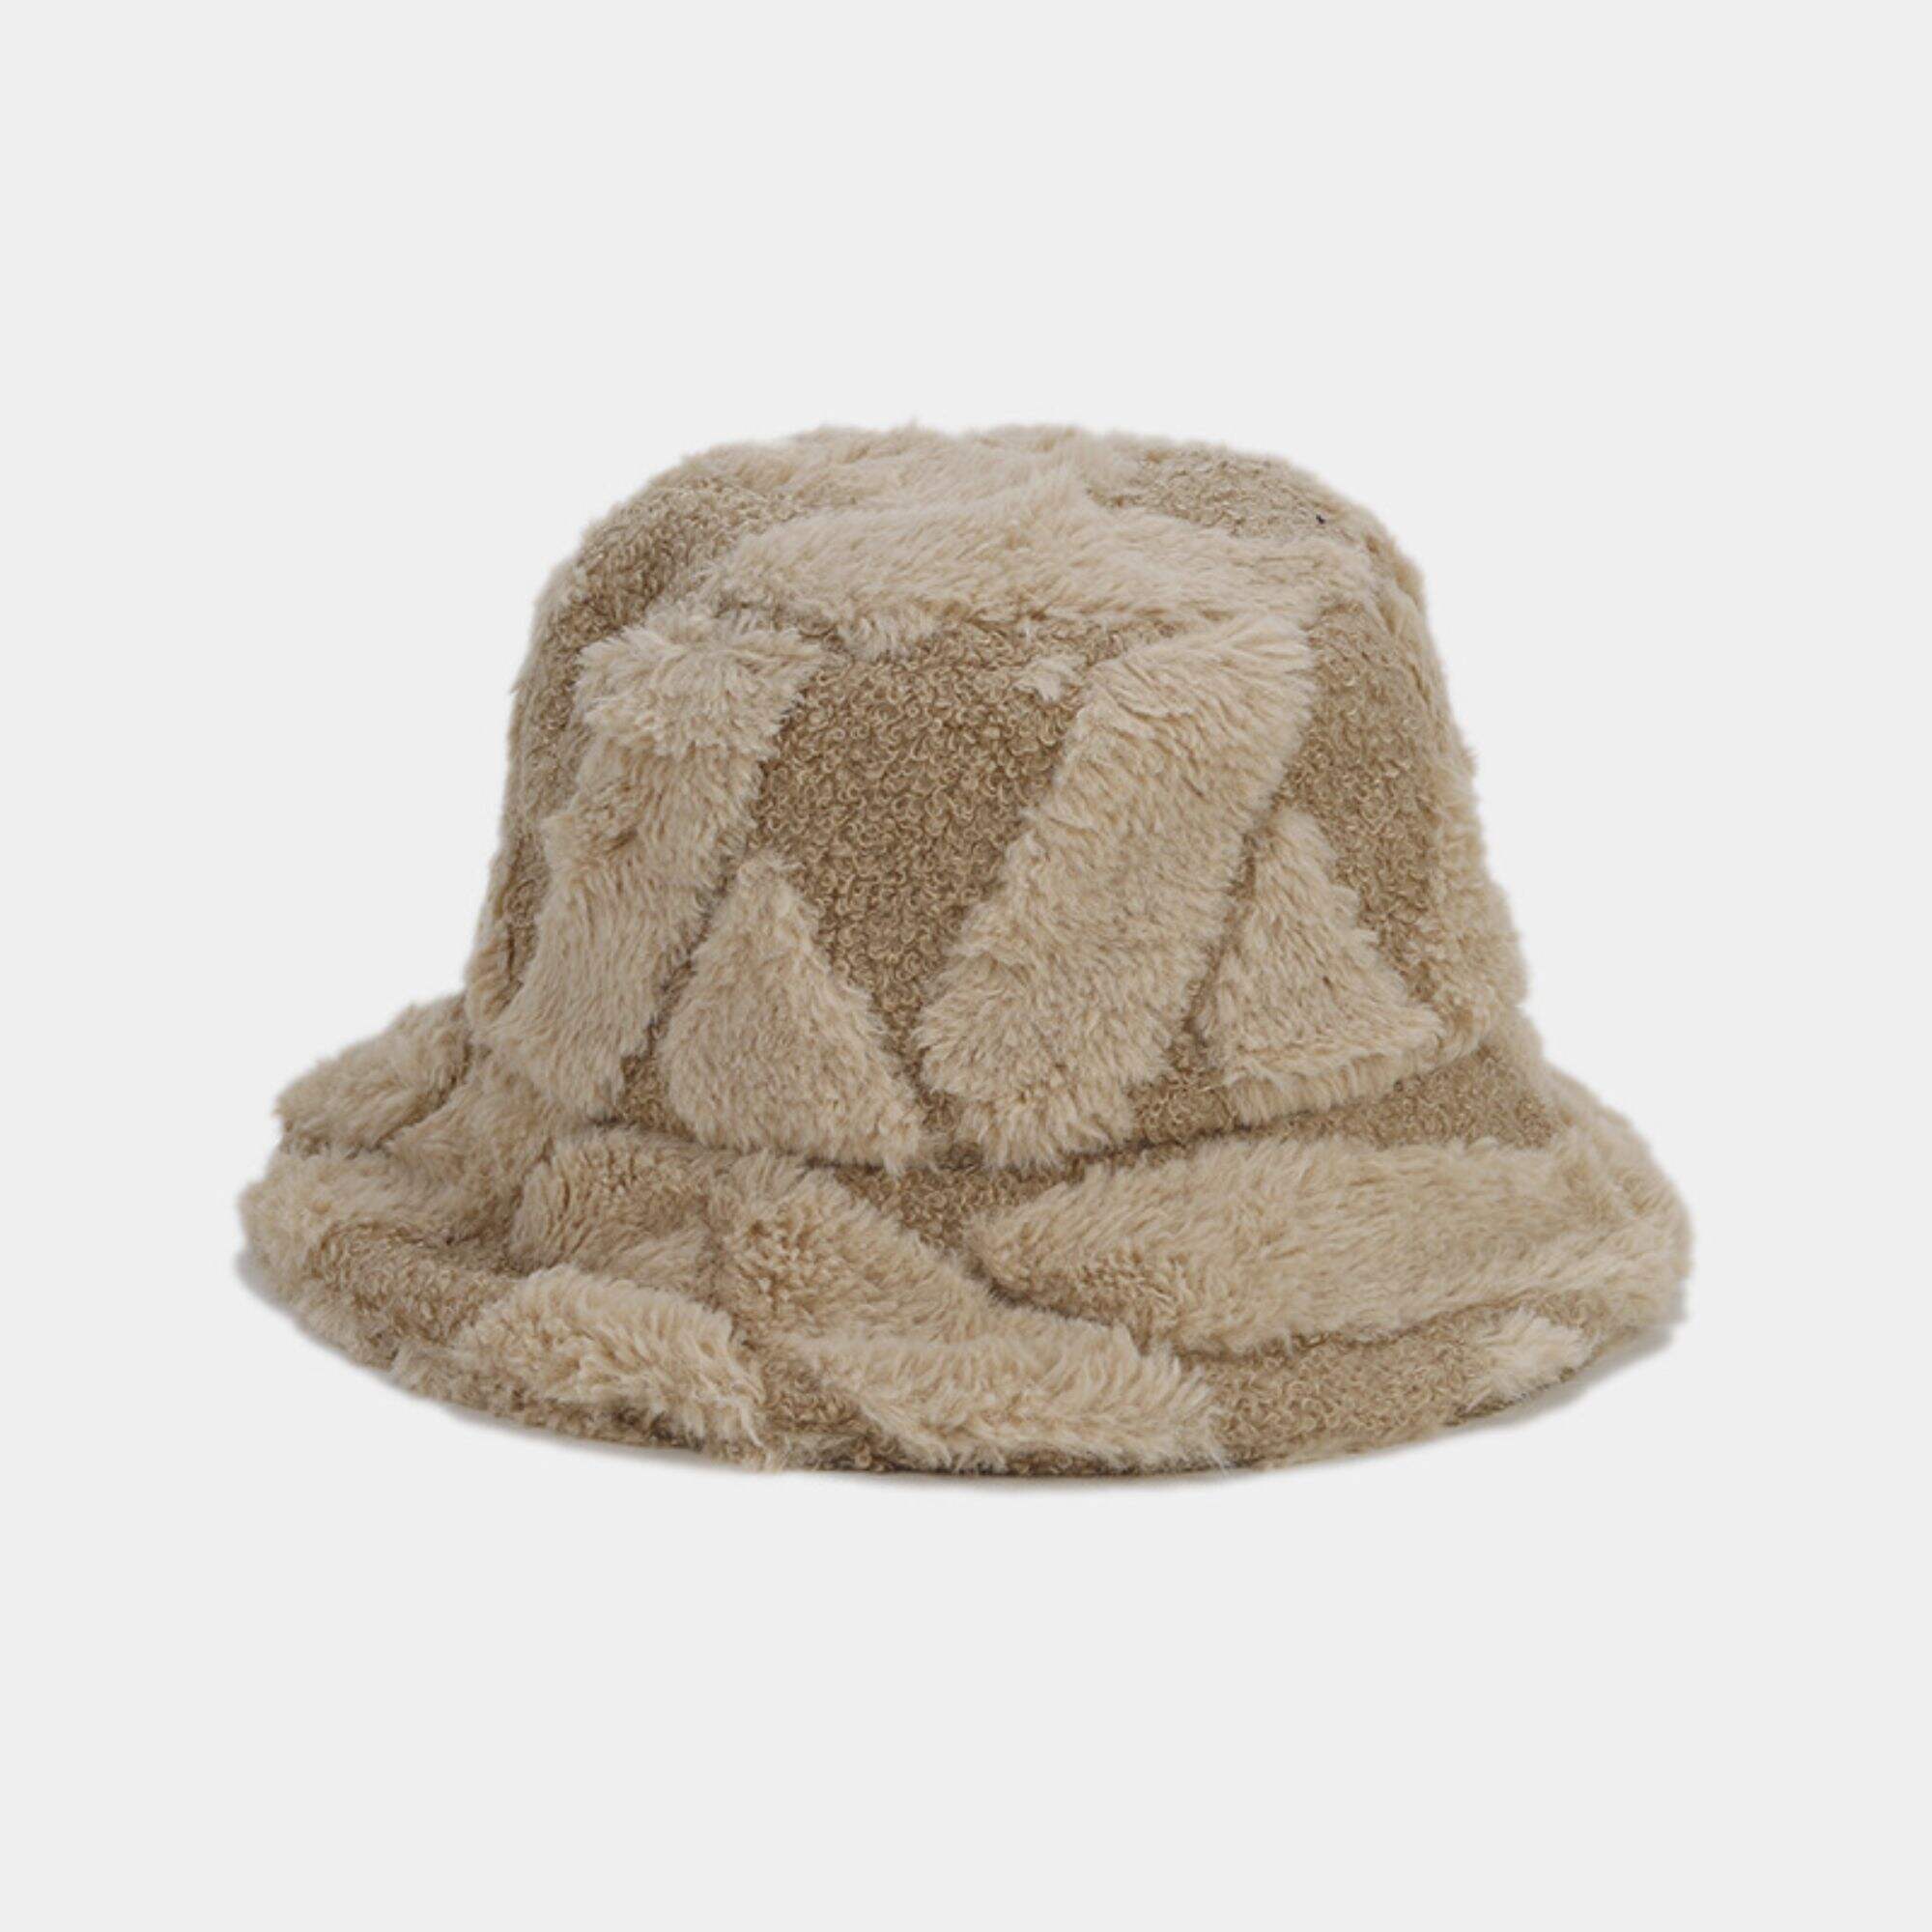 Winter bucket hat